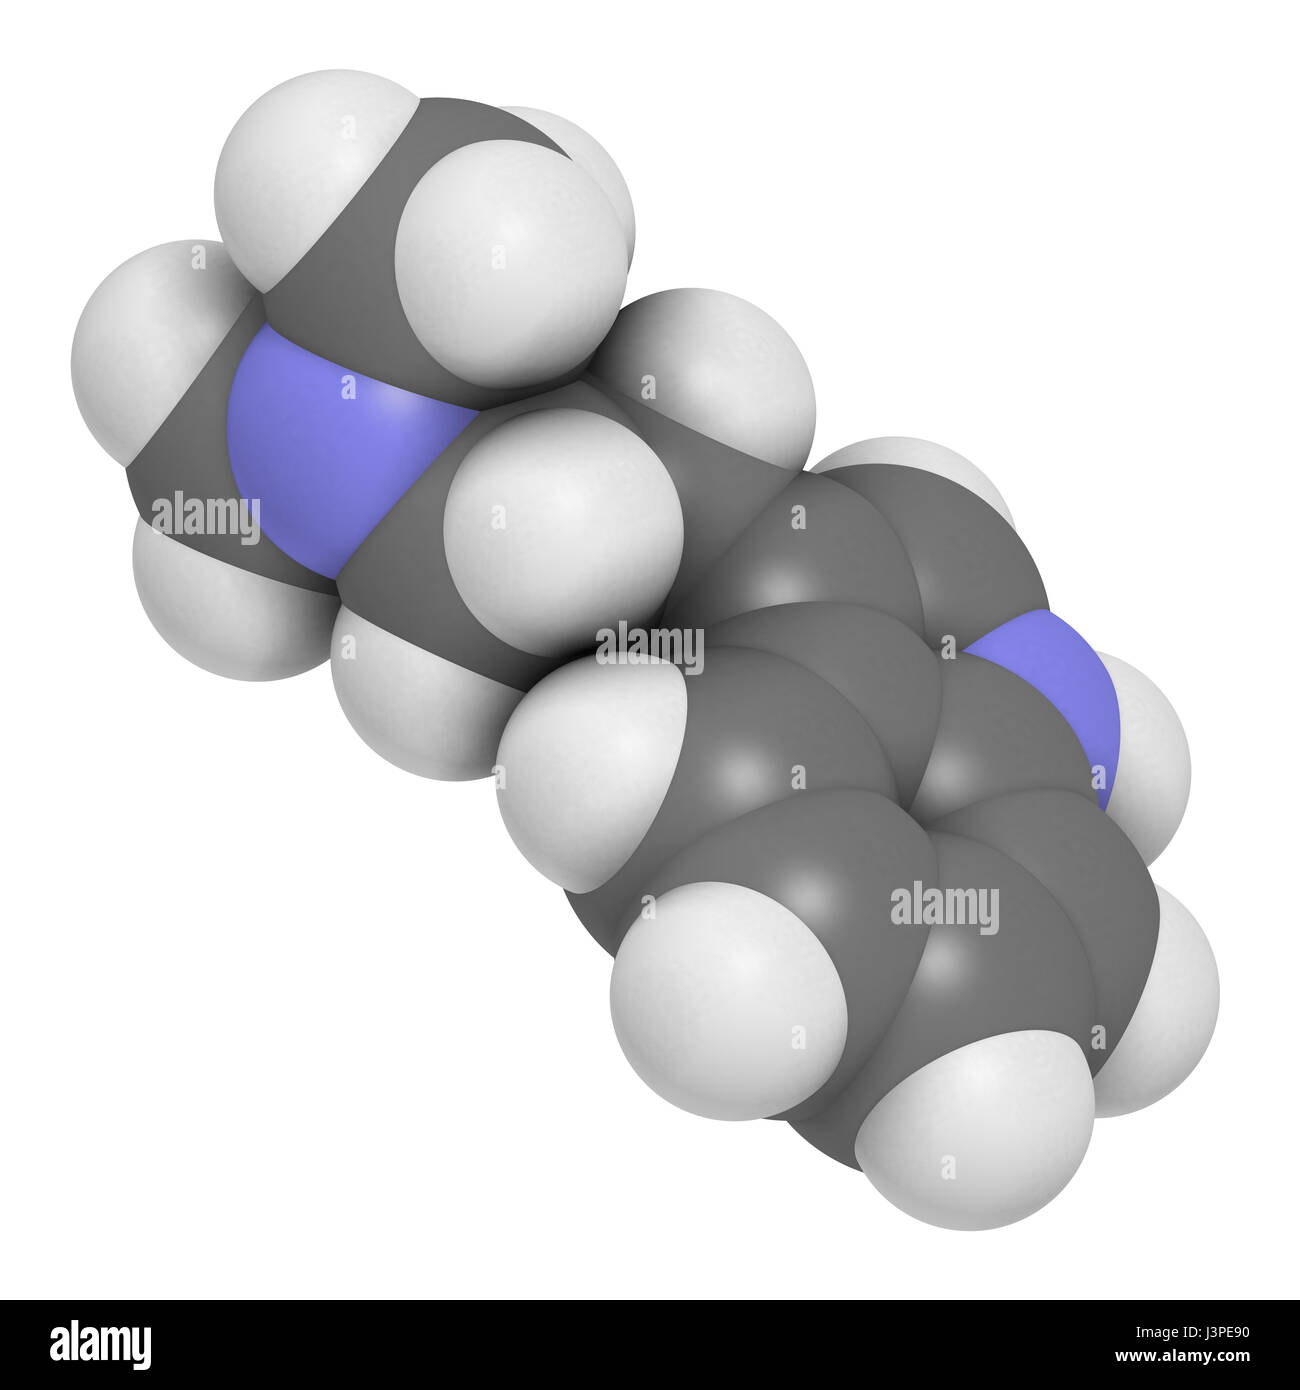 Dimethyltryptamin (DMT) psychedelische Droge Molekül. Das Getränk Ayahuasca zu präsentieren. Atome sind als Kugeln mit konventionellen Farbcodierung vertreten: h Stockfoto